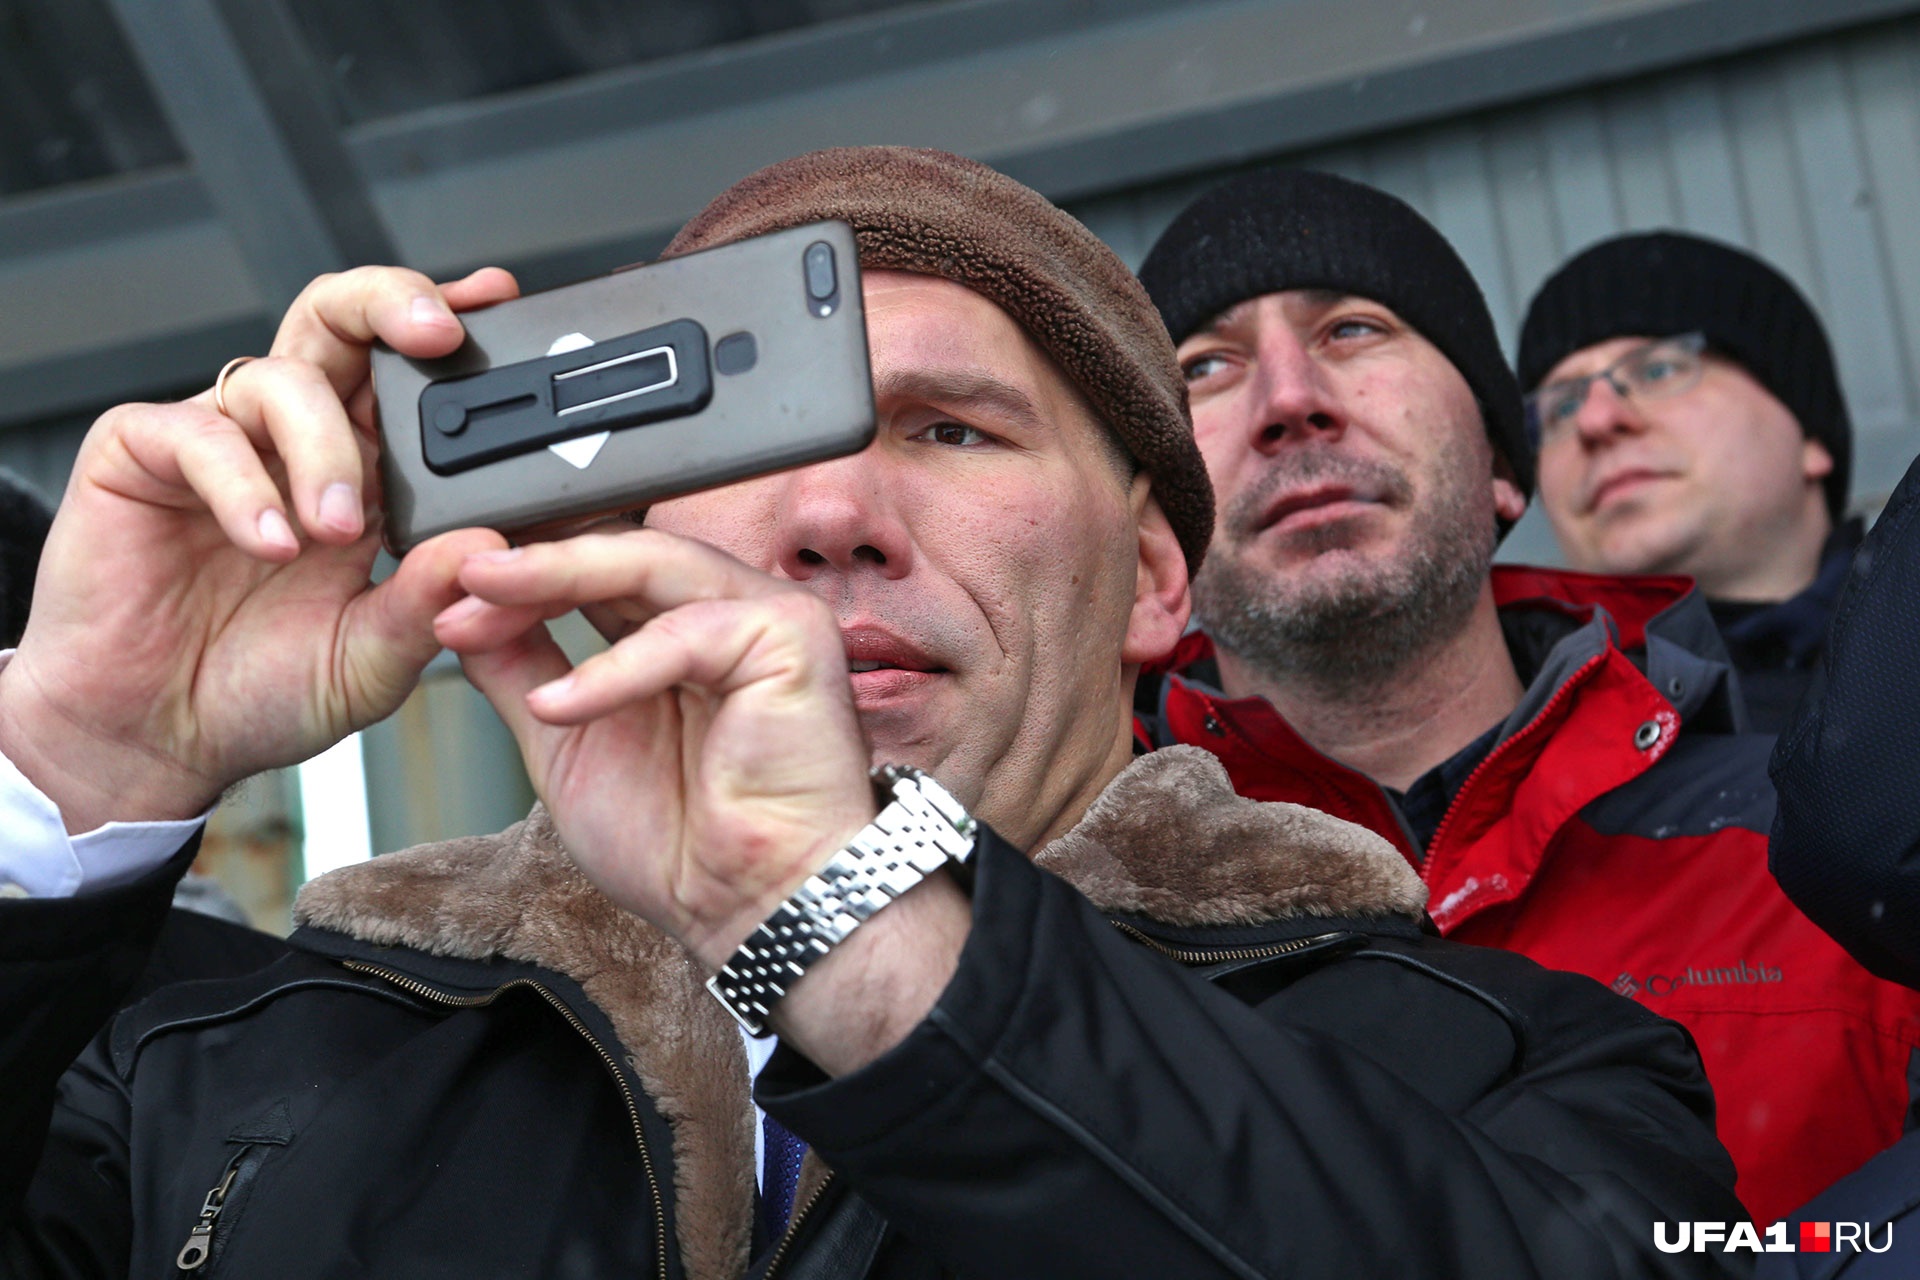 Николай Сергеевич решил запечатлеть уфимские события на камеру телефона